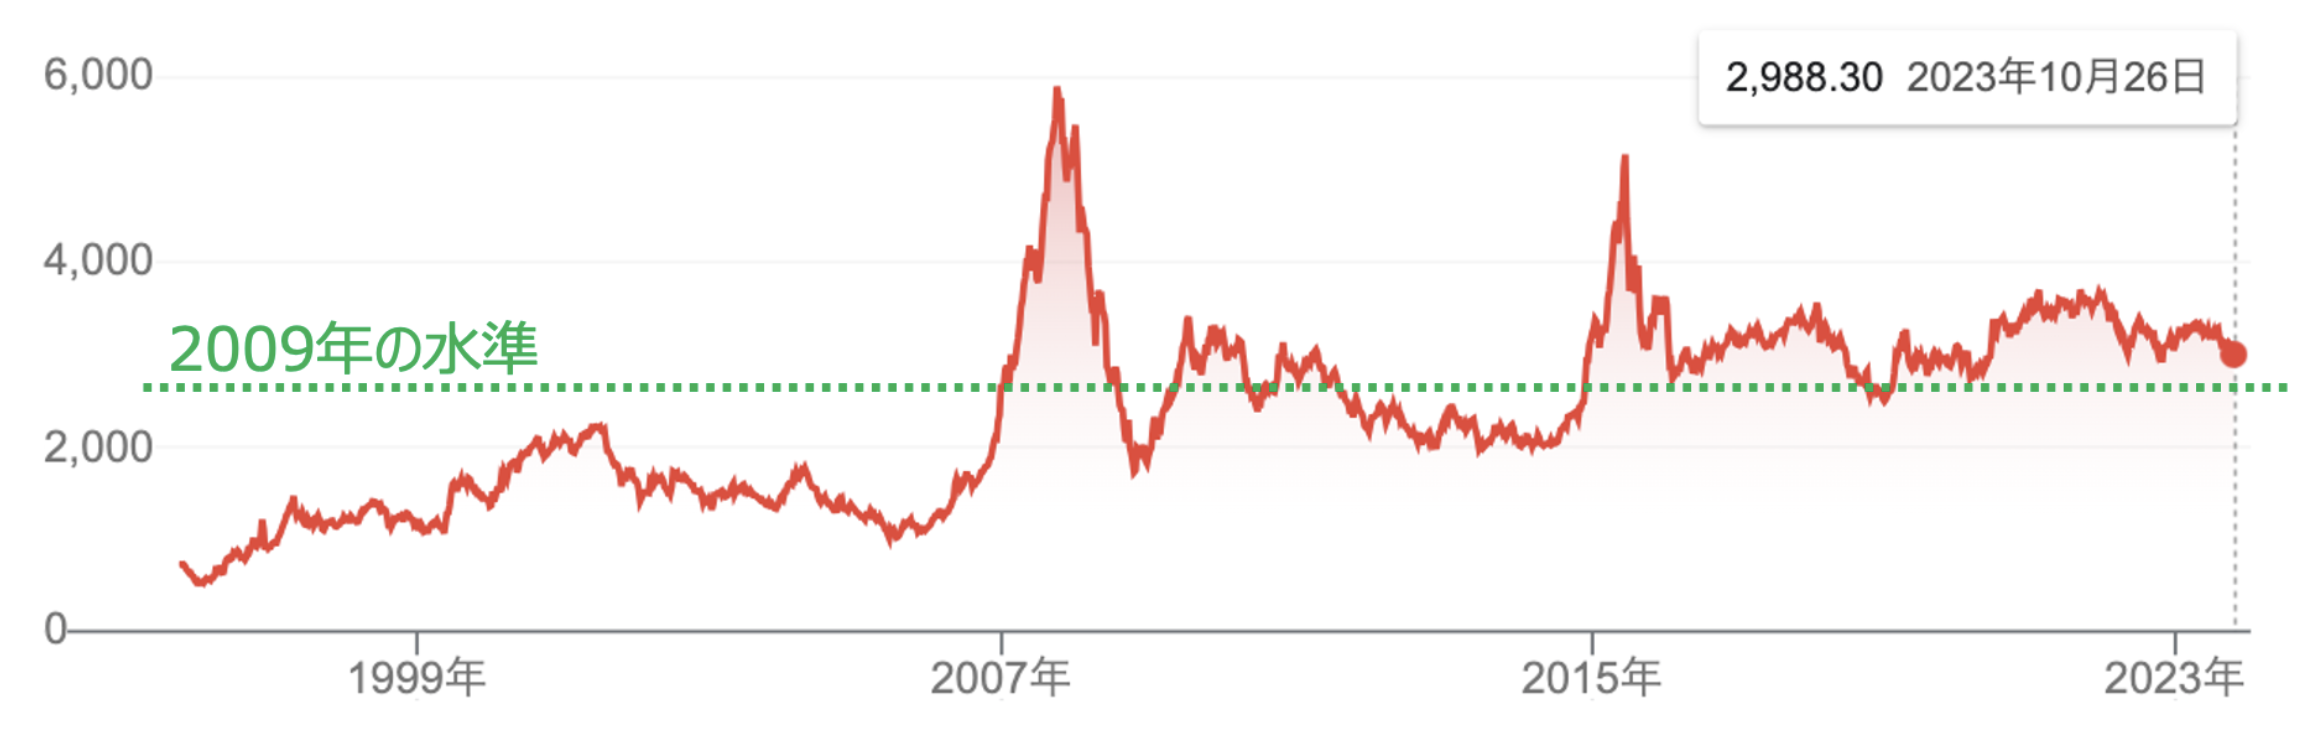 割安感が高まっている中国の株式市場